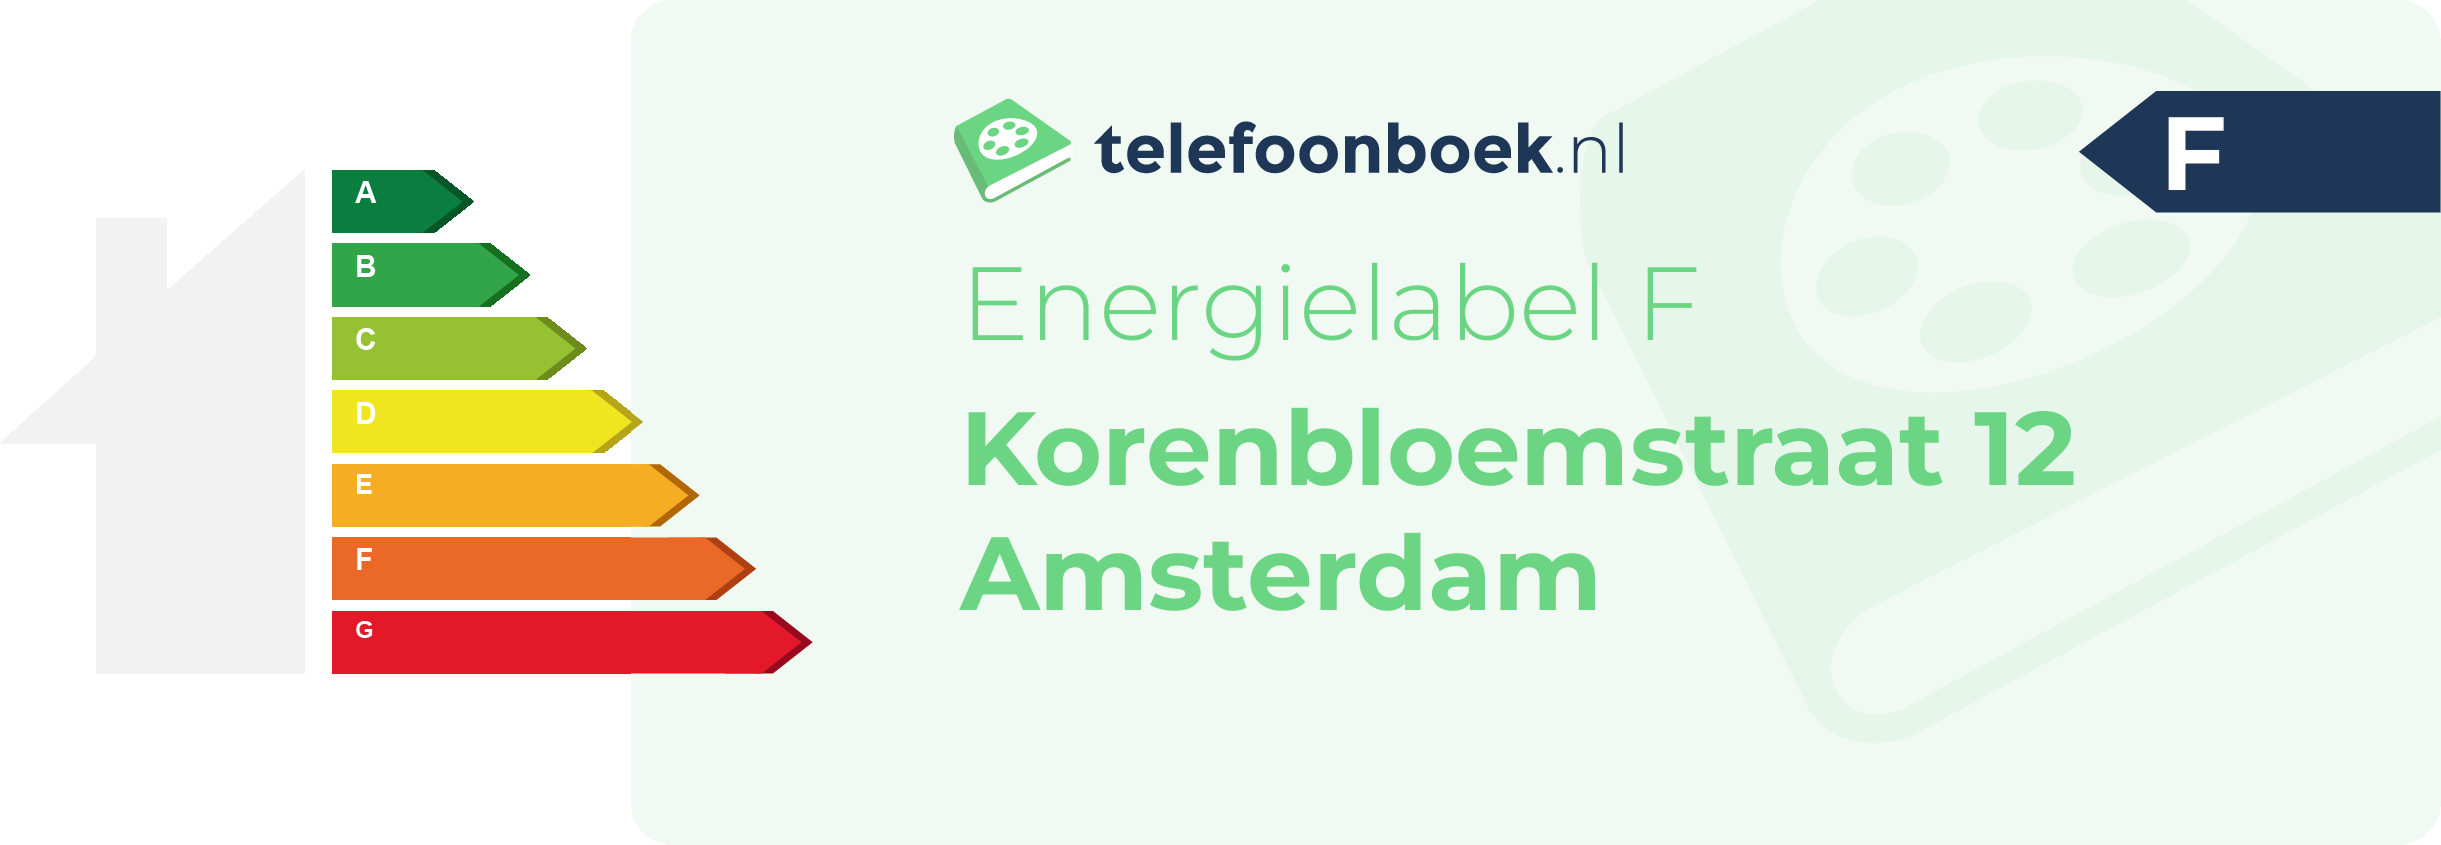 Energielabel Korenbloemstraat 12 Amsterdam